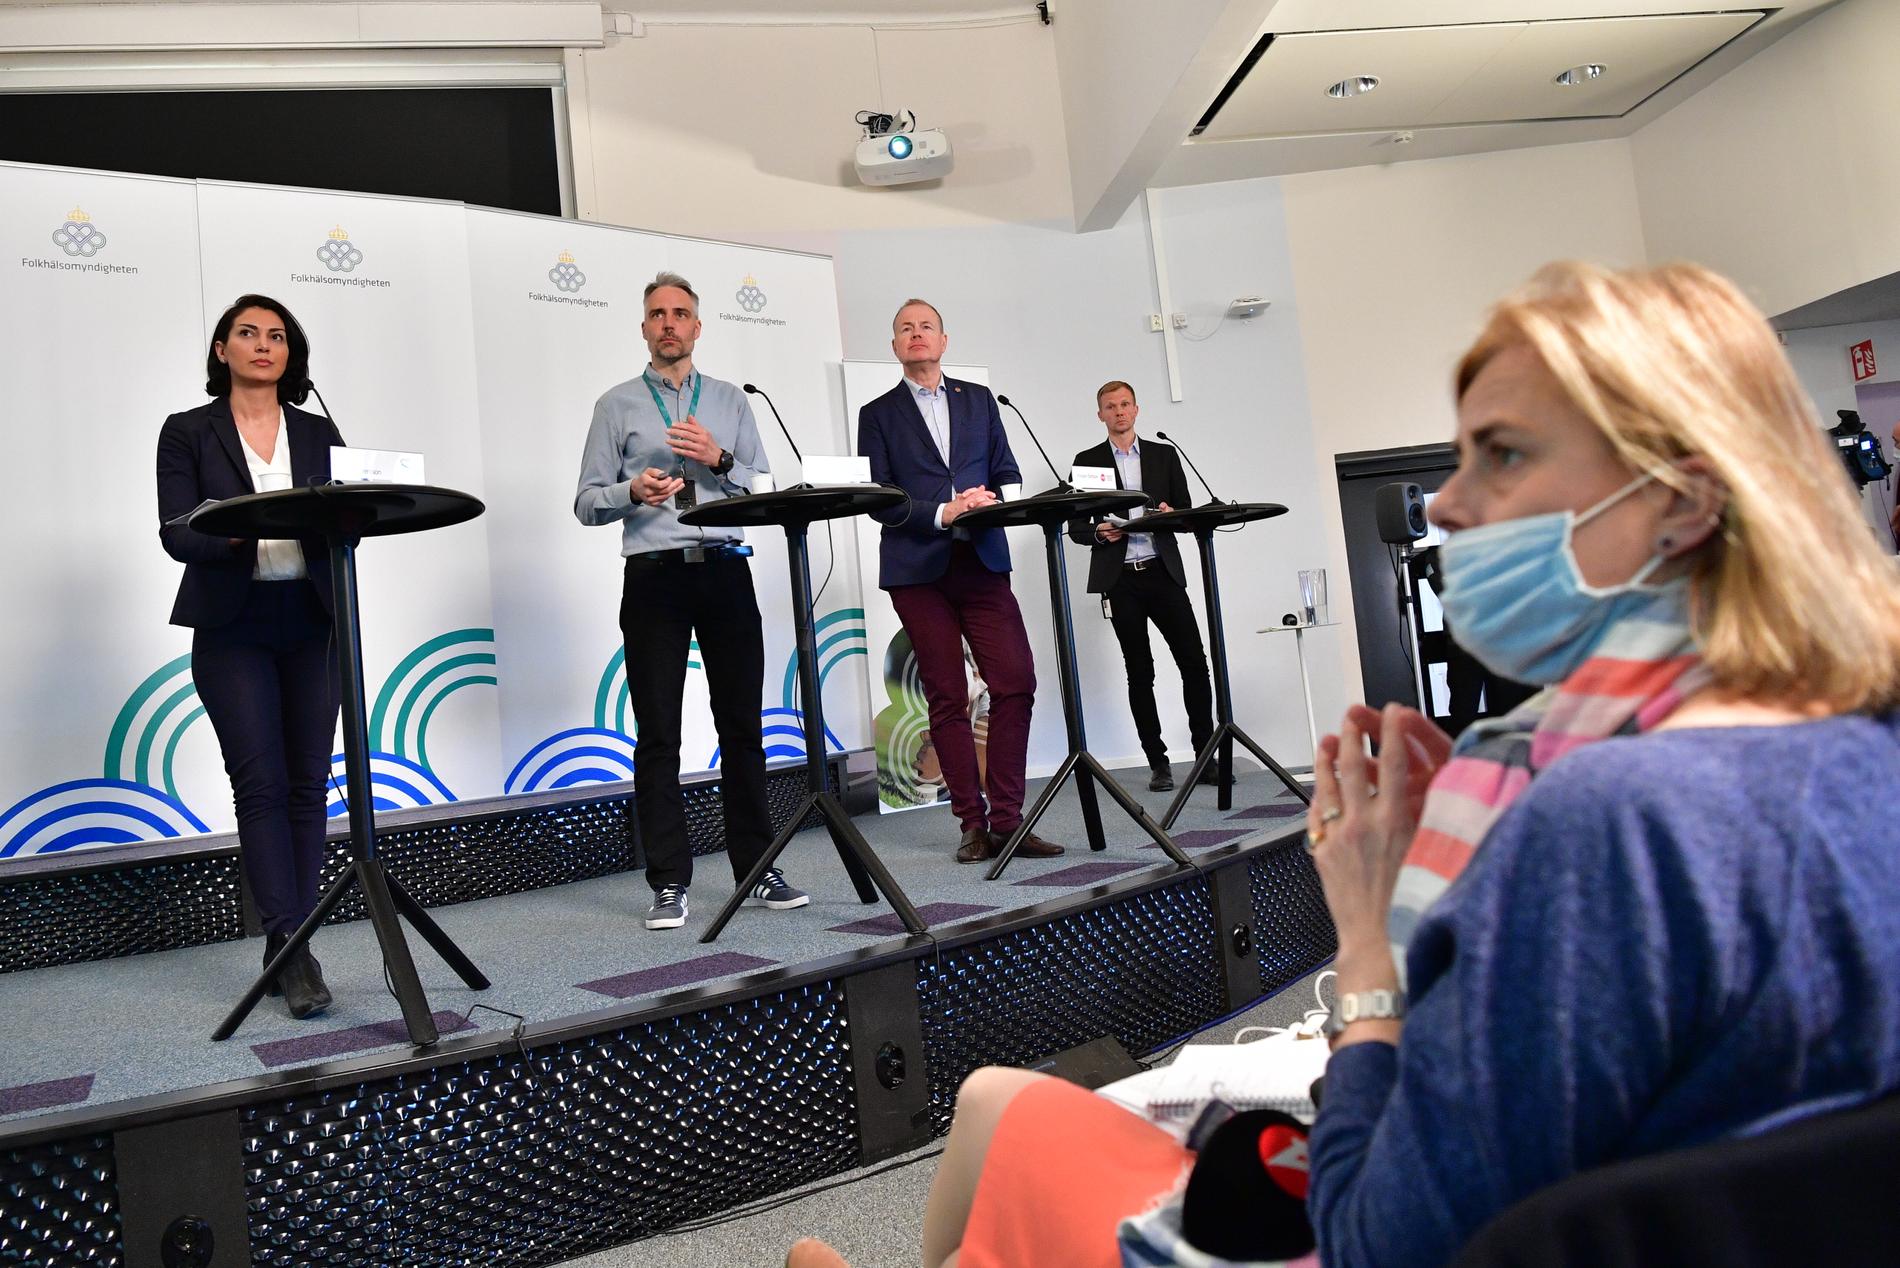 Den 21 april 2020 tittade mer än 600 000 personer på SVT:s direktsändning från Folkhälsomyndighetens presskonferens, som då fortfarande hade journalister och alla myndighetsrepresentanter på plats. Arkivbild.